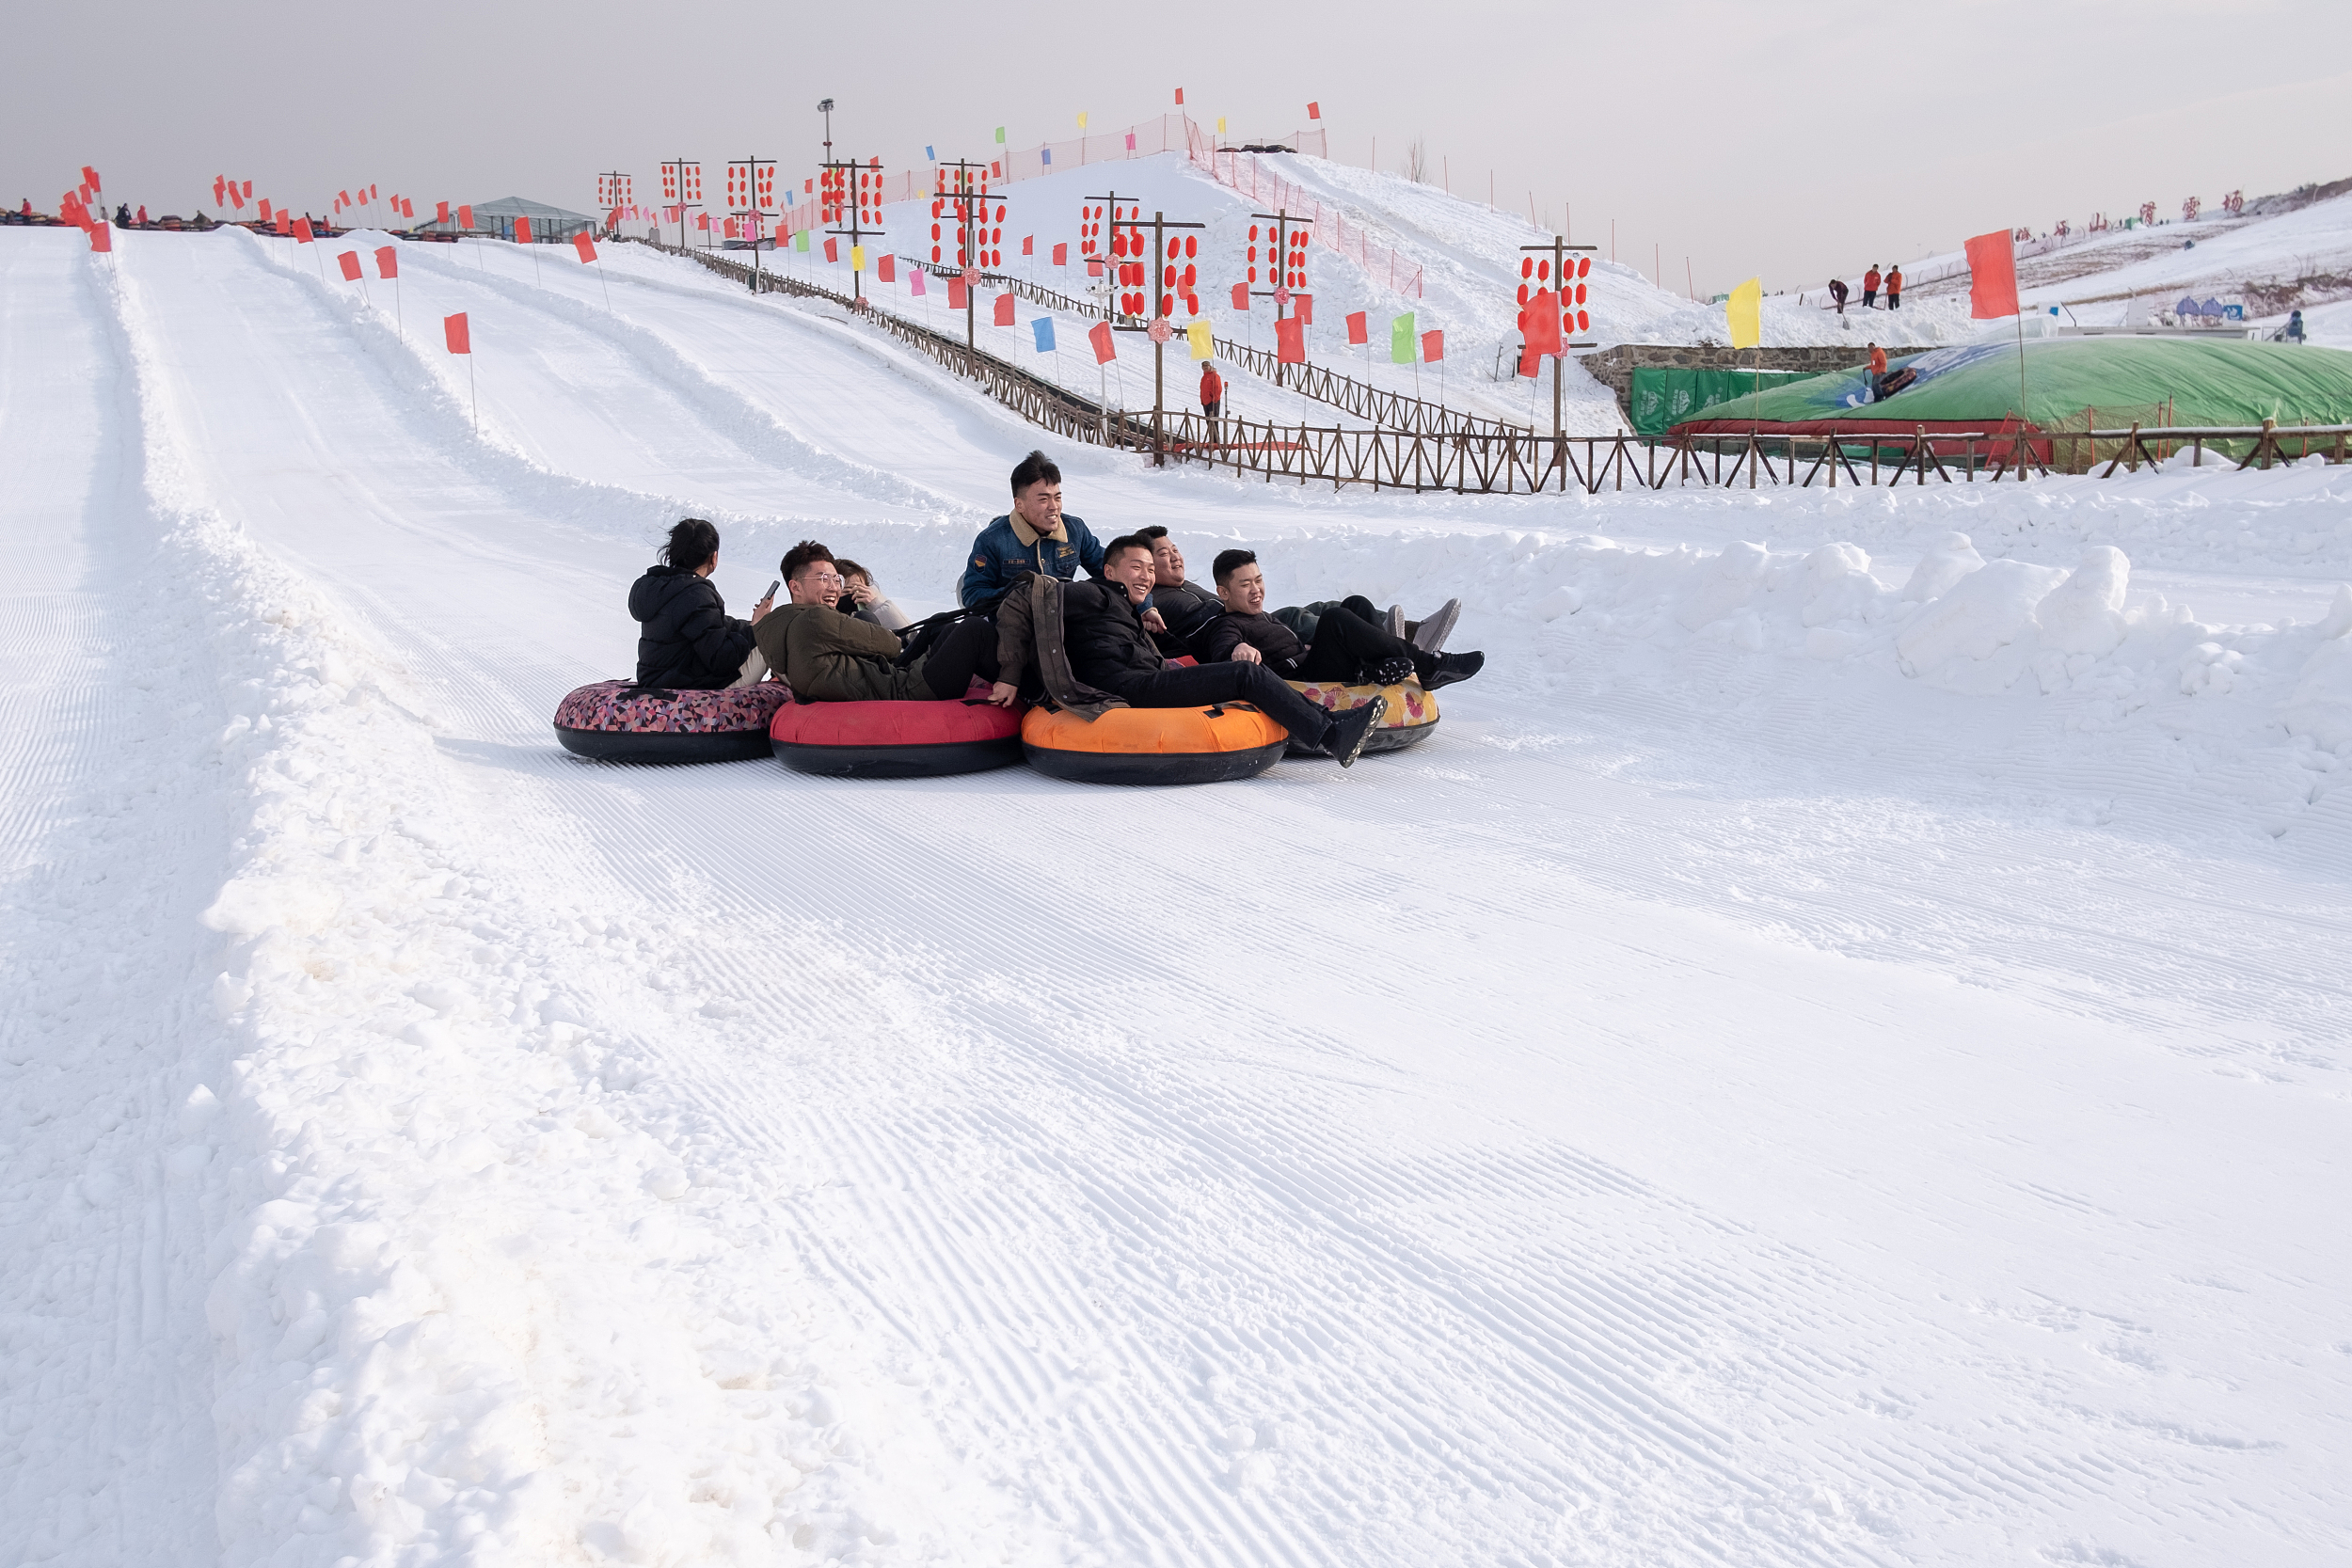 藁城滹沱河滑雪场图片